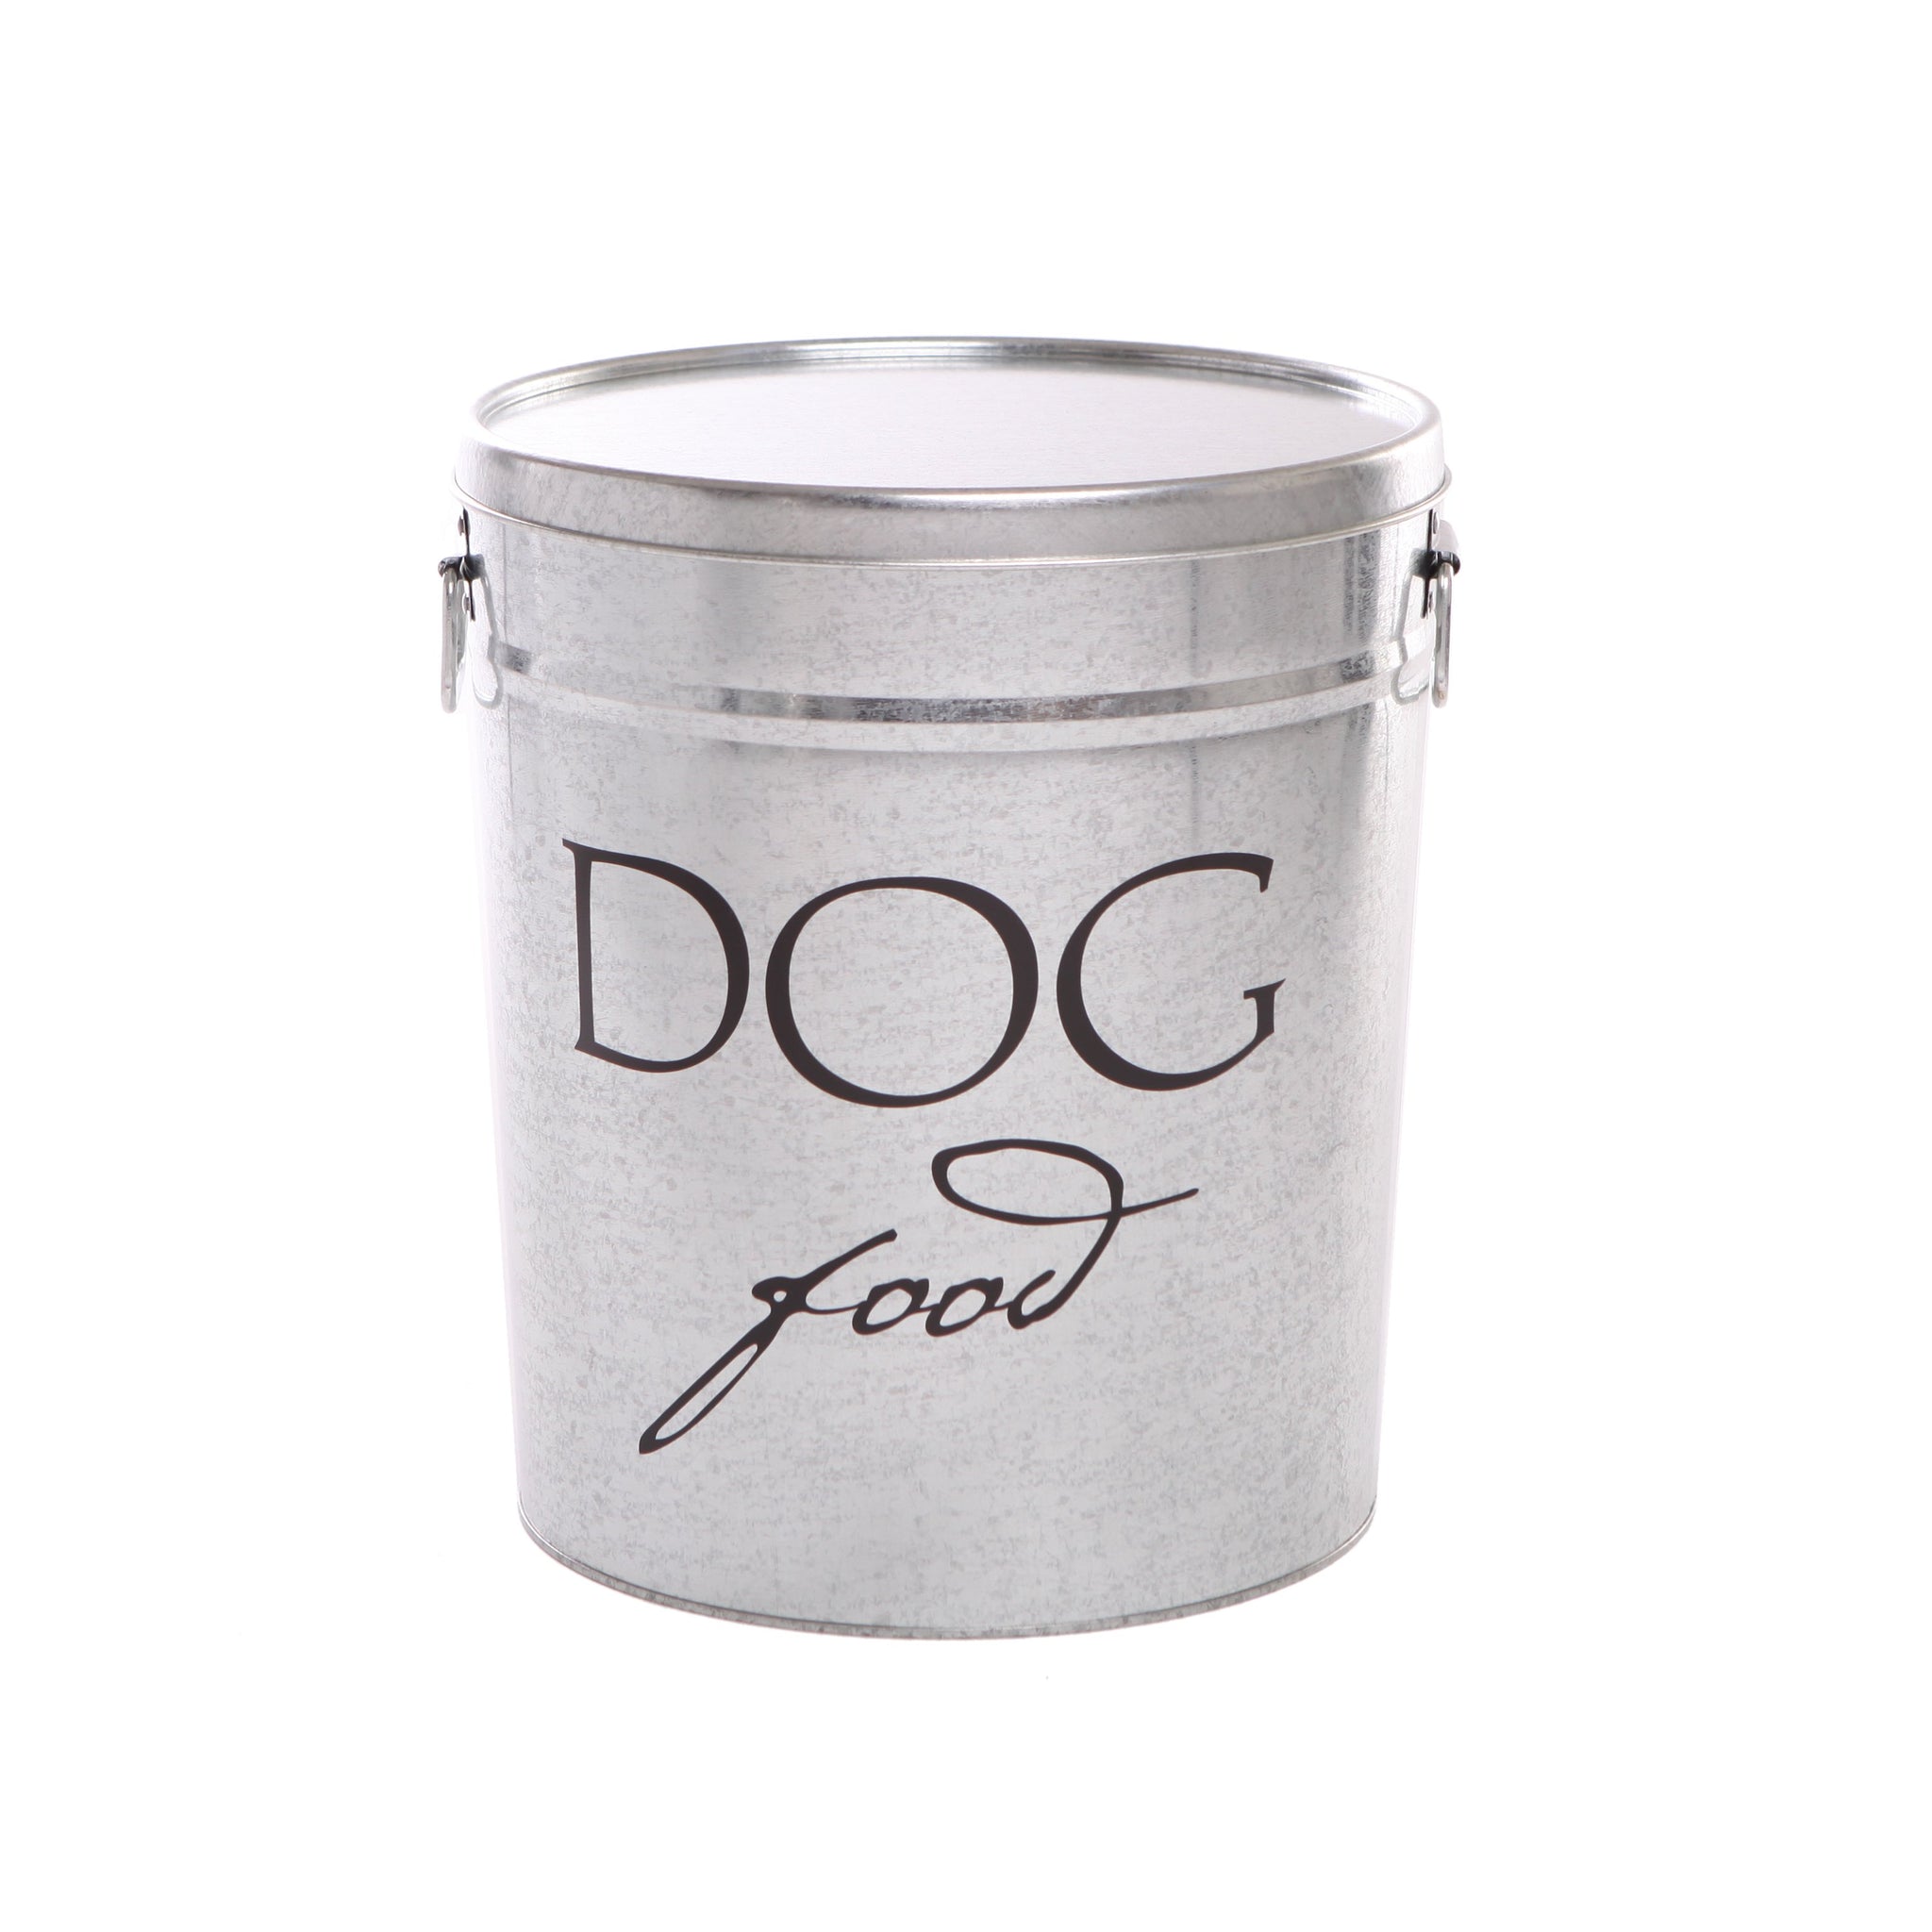 Harry Barker Bon Chien Dog Food Storage Canister, Large